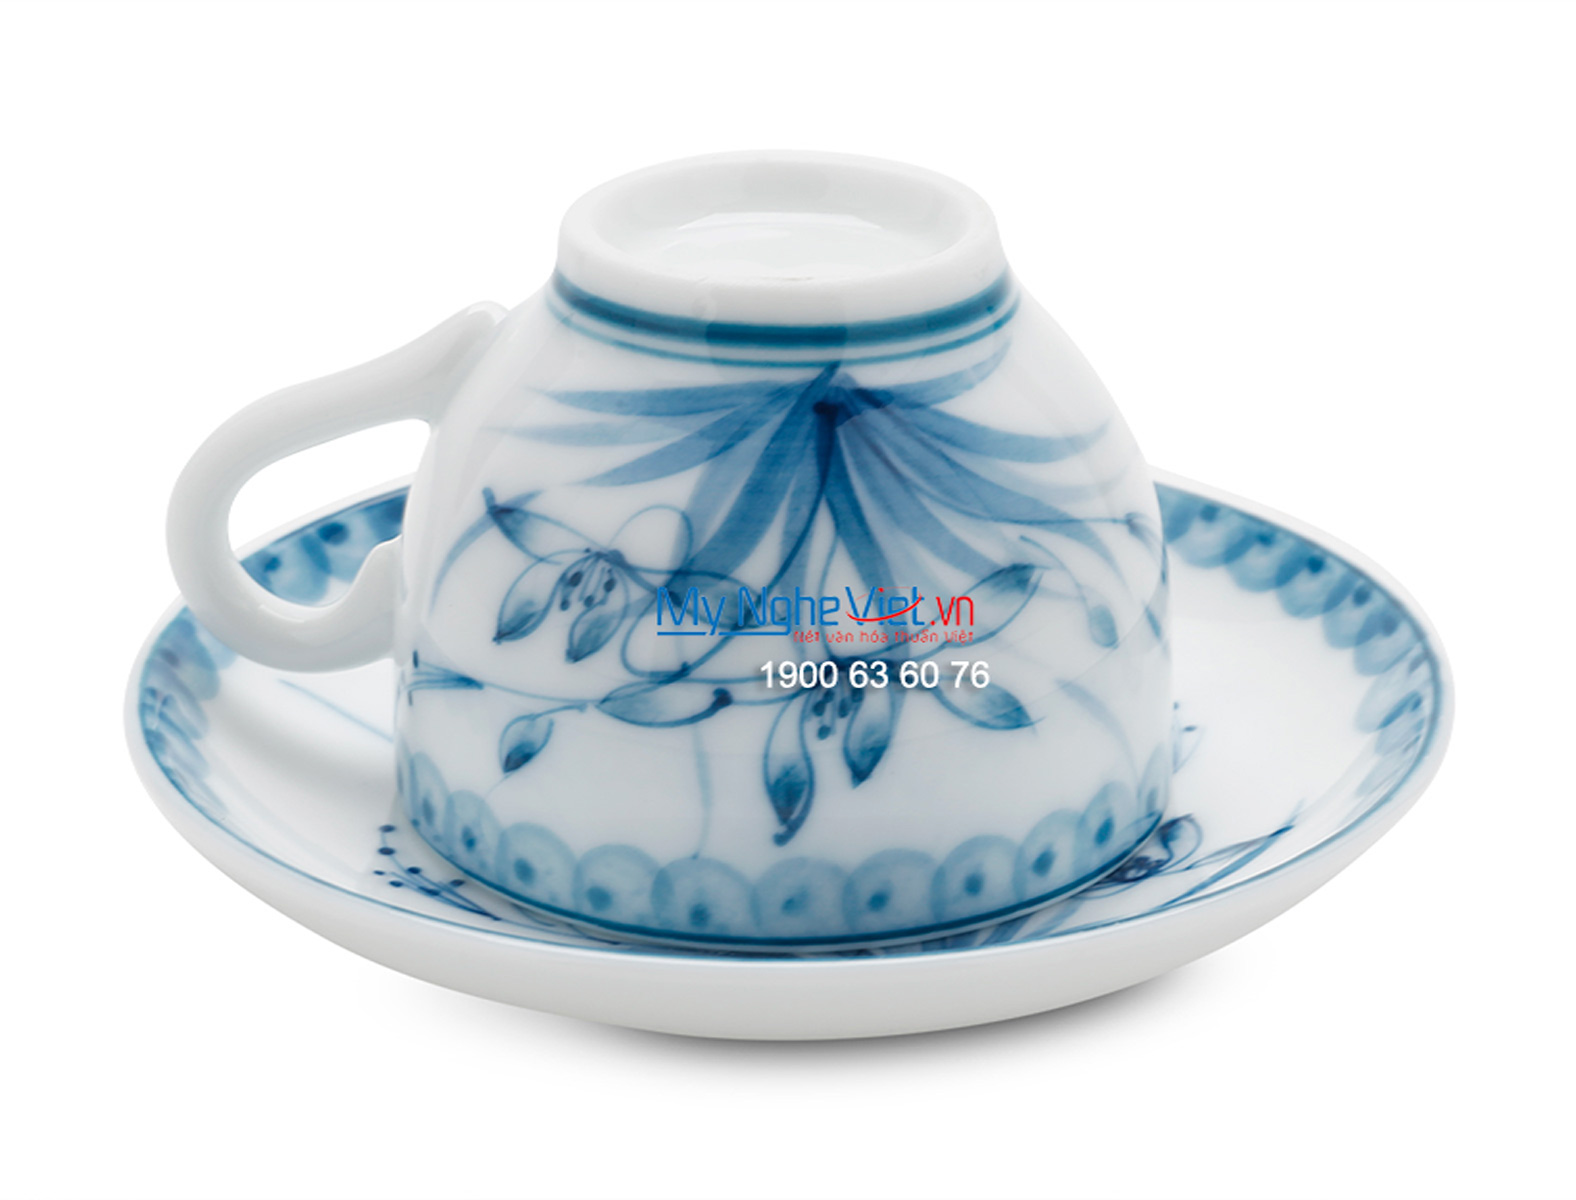 Bộ bình trà men trắng vẽ hoa xanh lam MNV-TS473 (HÀNG ĐẶT)